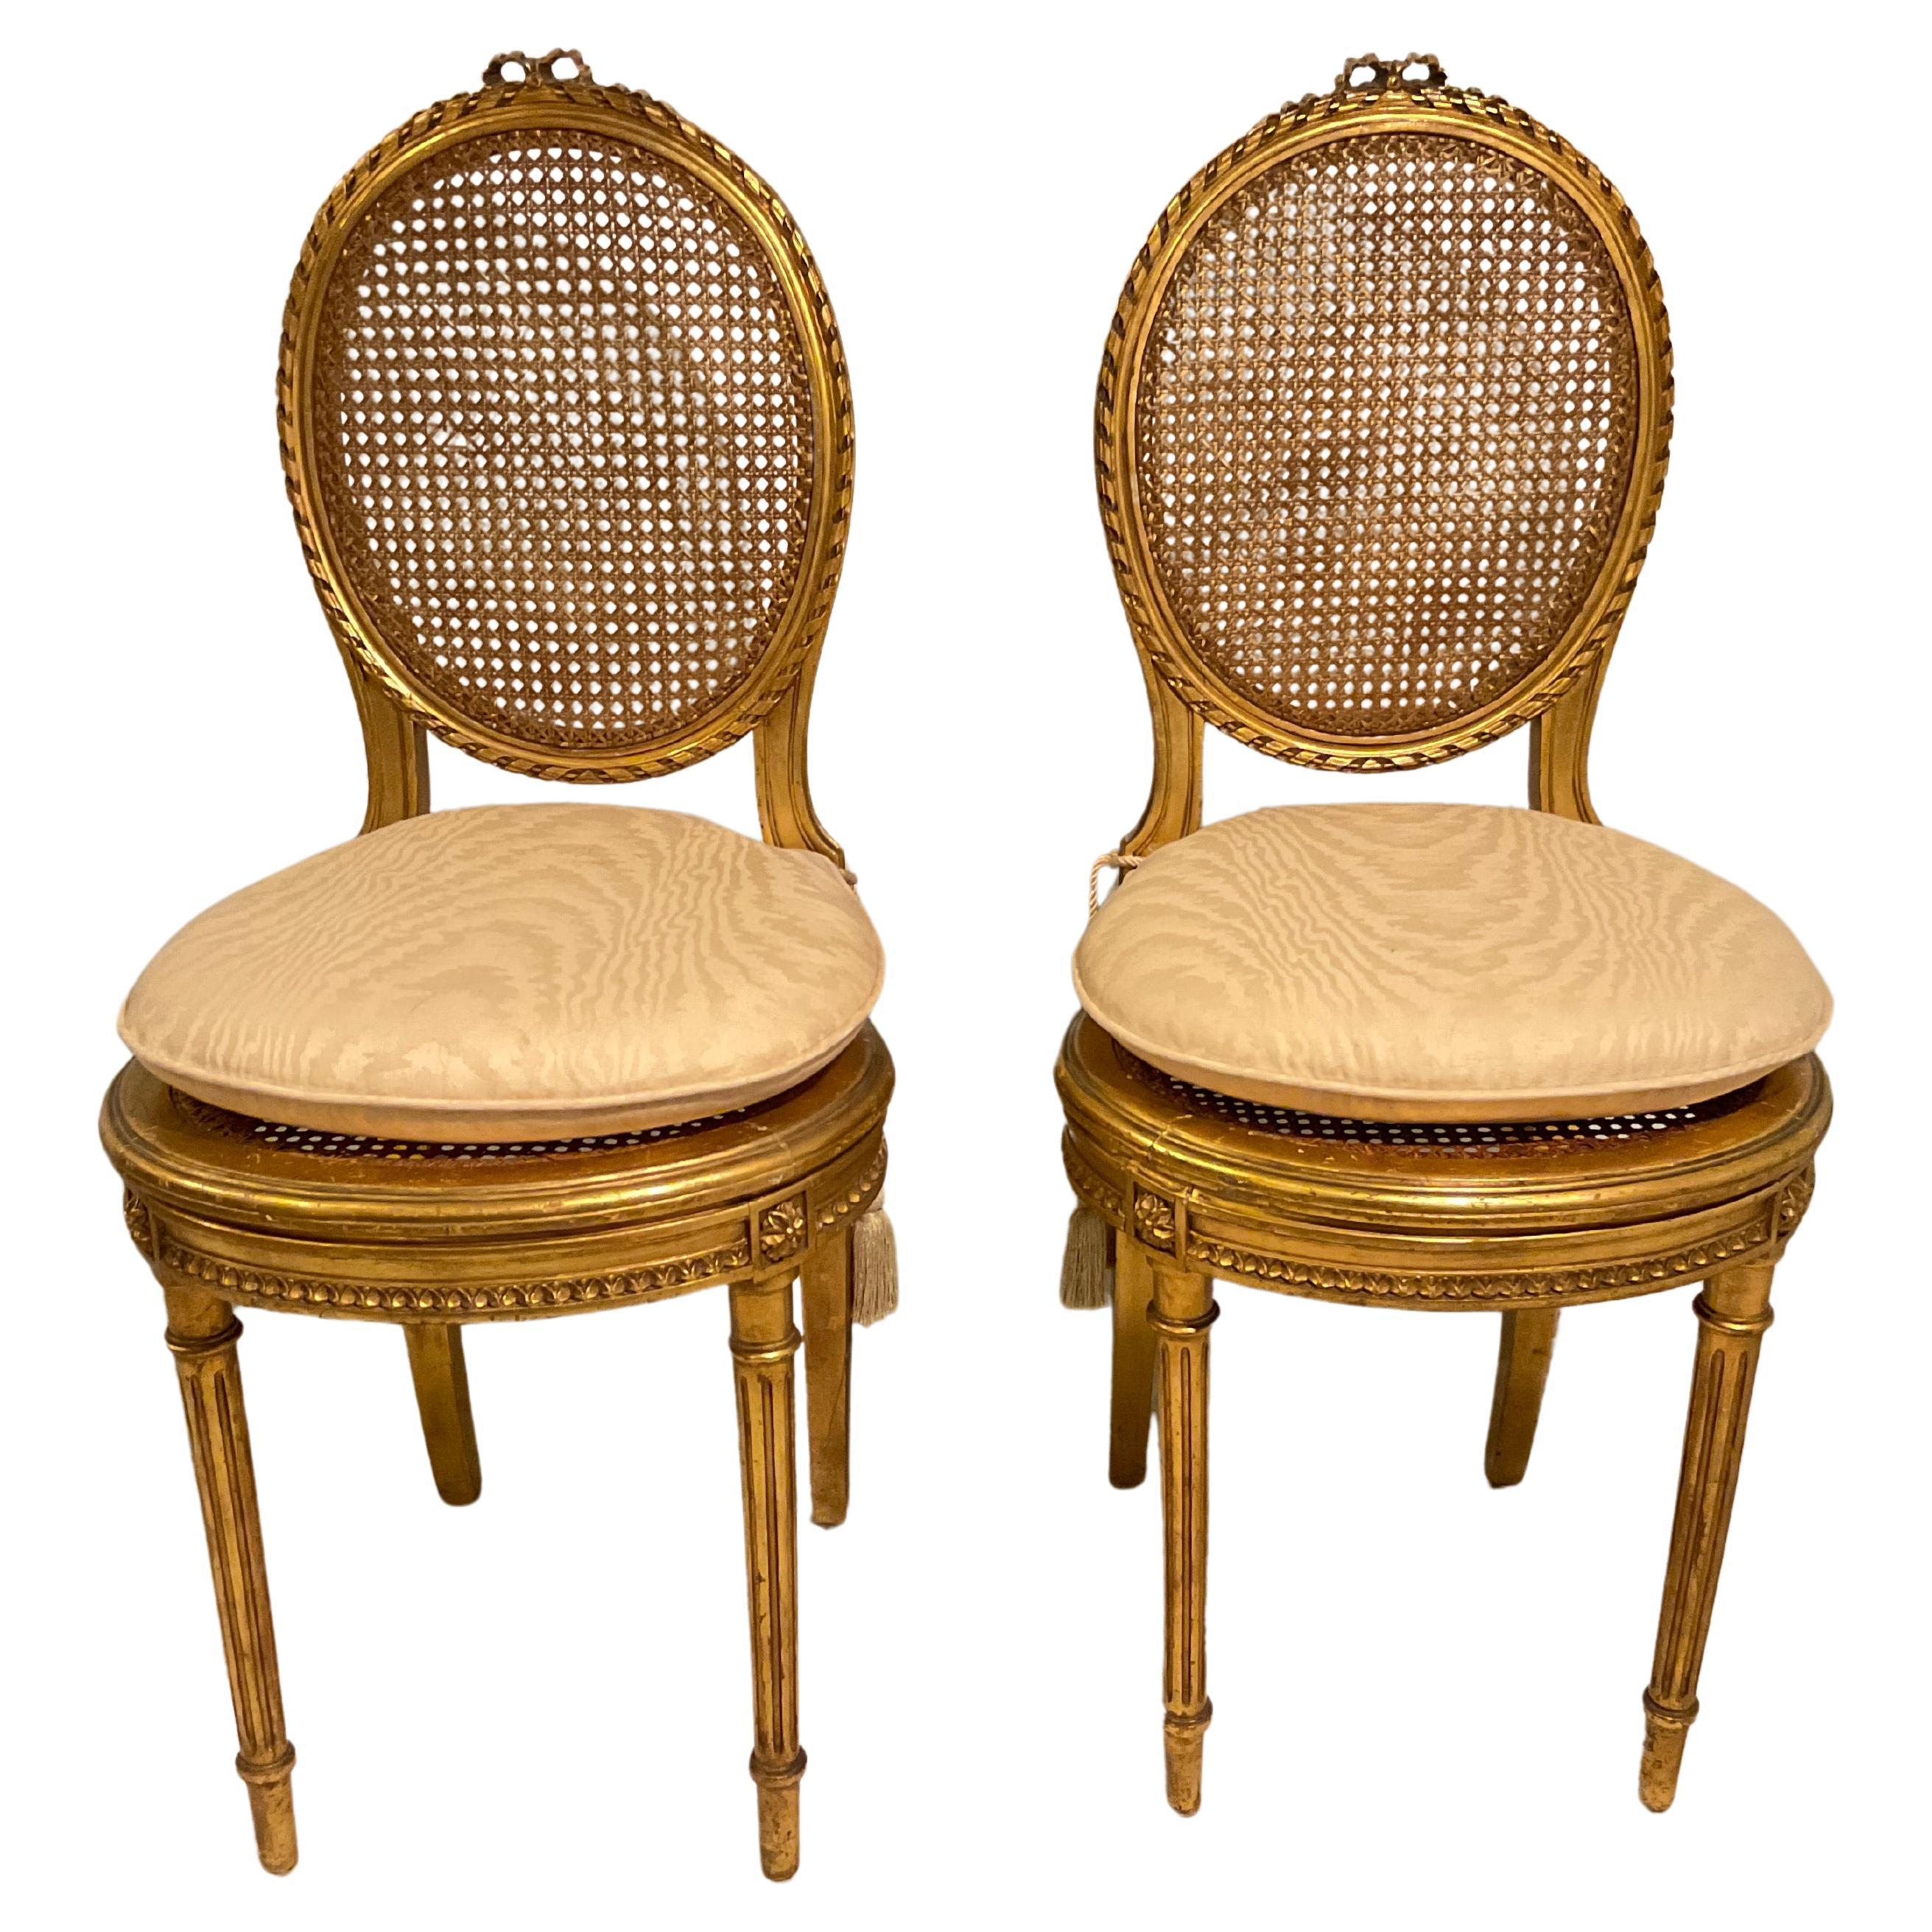 Paire de petites chaises d'appoint françaises des années 1920 en bois doré sculpté